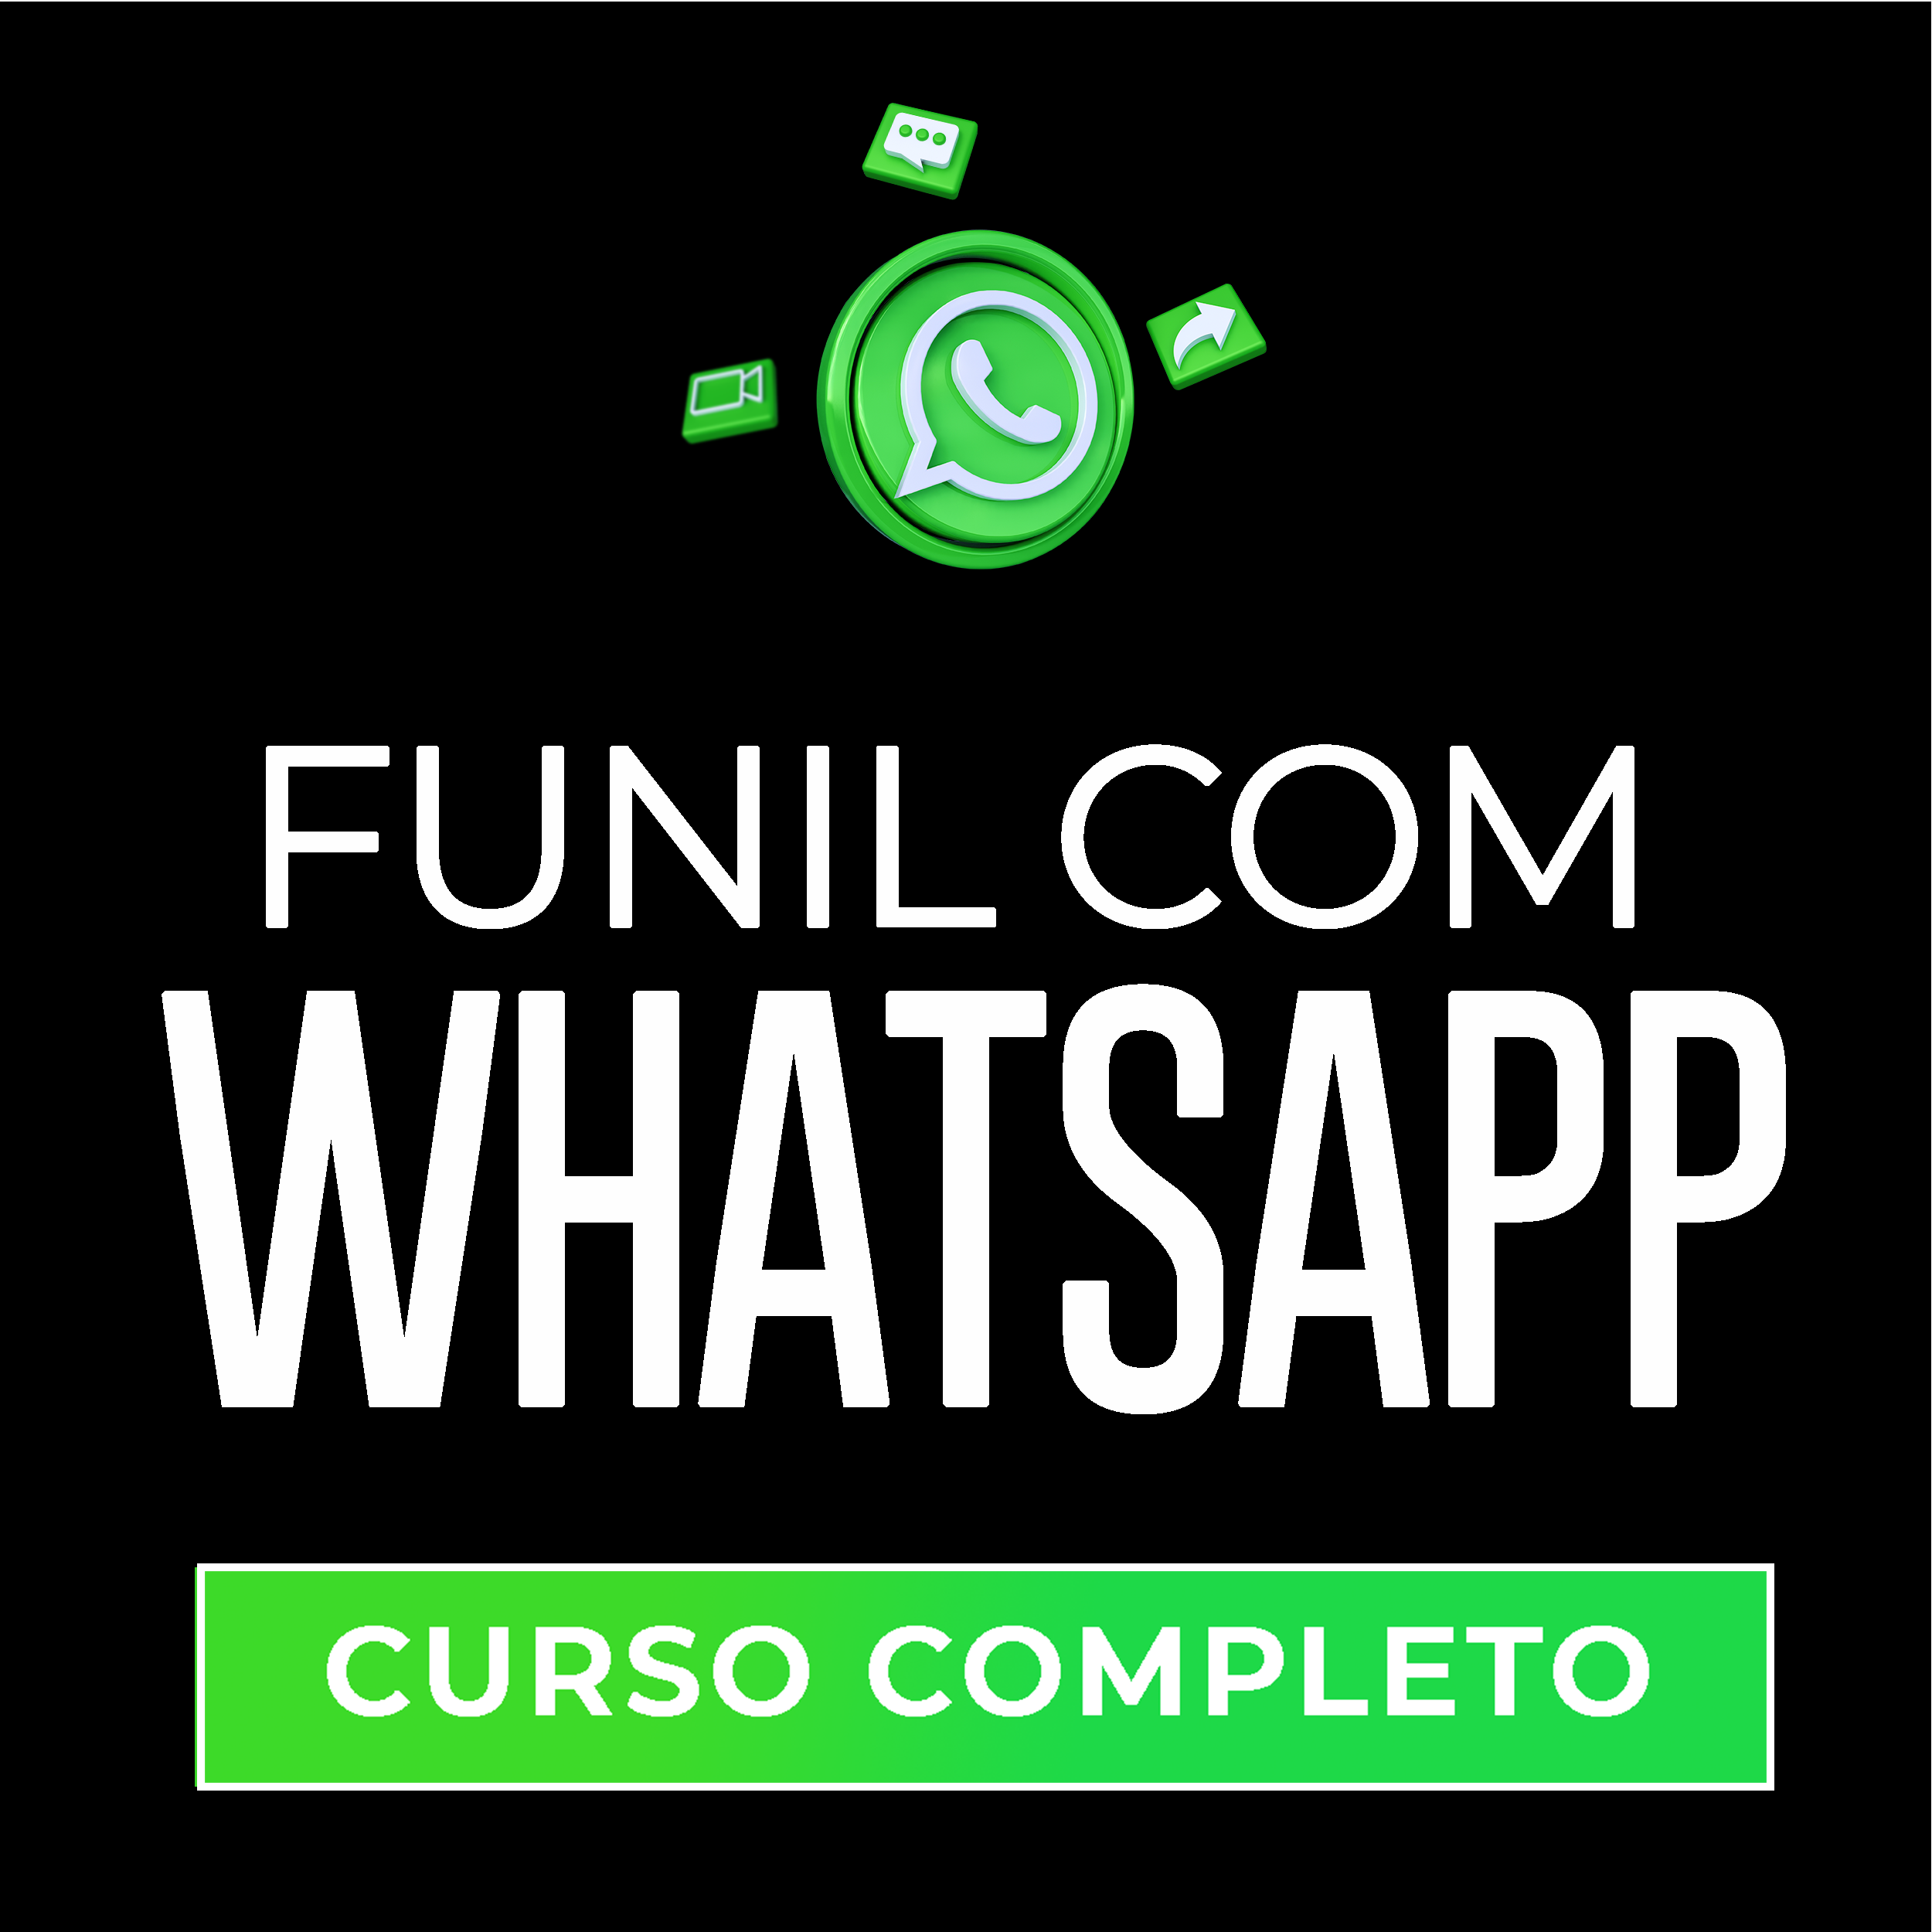 Curso Completo - Funil Com Whatsapp: Como Transformar Grupos em Lucro (Todos os Dias) 88